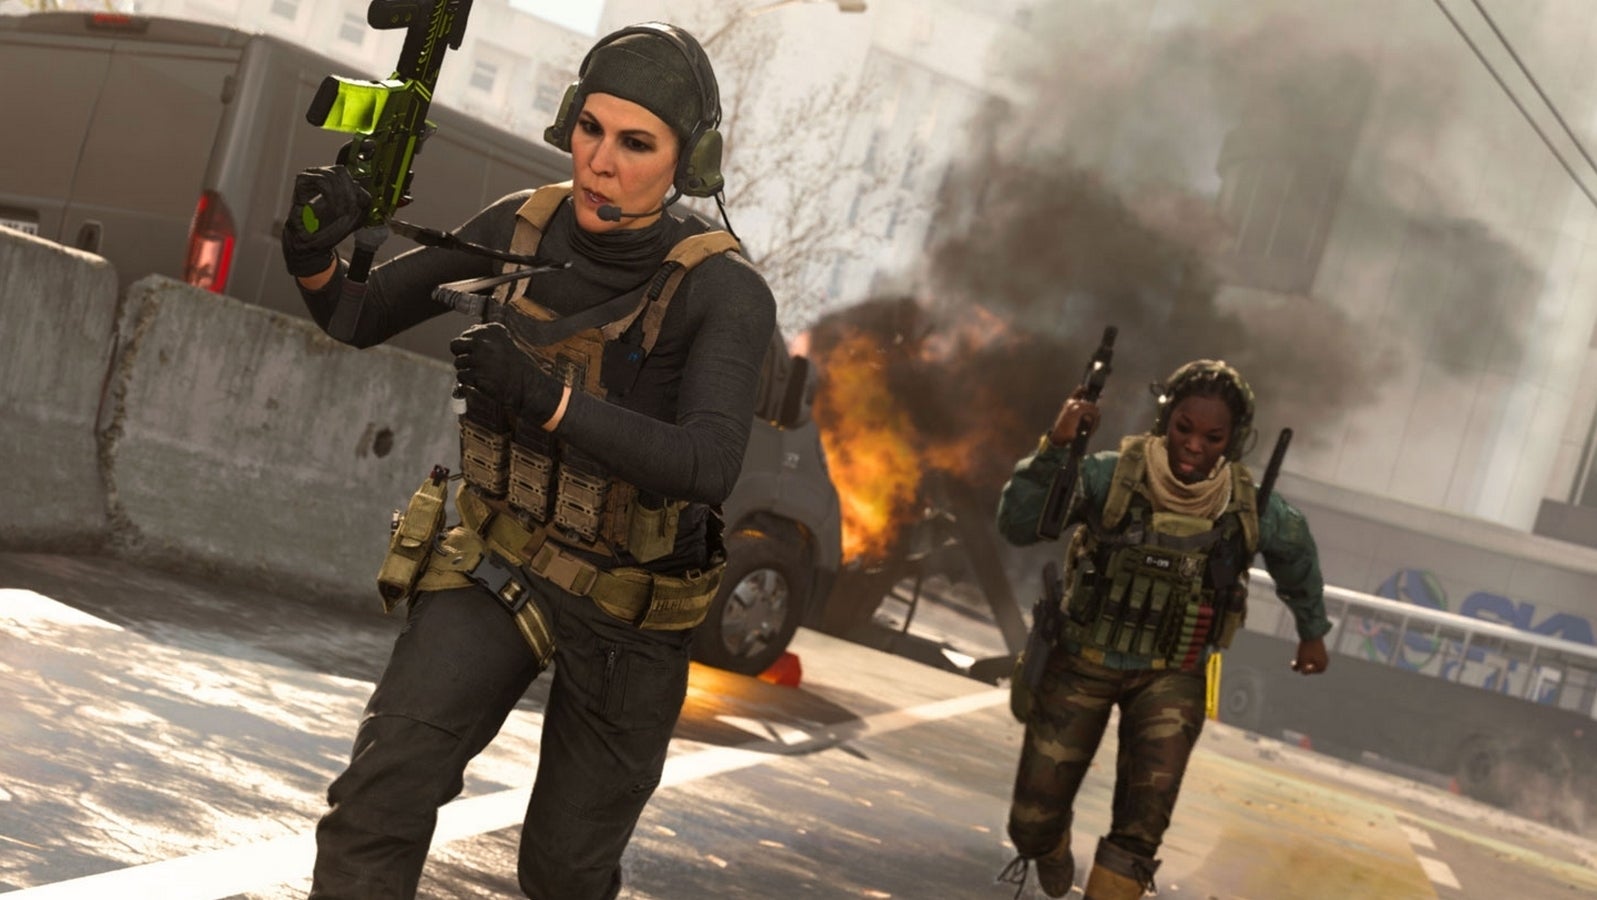 Bilder zu Call of Duty: Season 4 in Warzone und Modern Warfare sowie Season 7 in Mobile auf unbestimmte Zeit verschoben